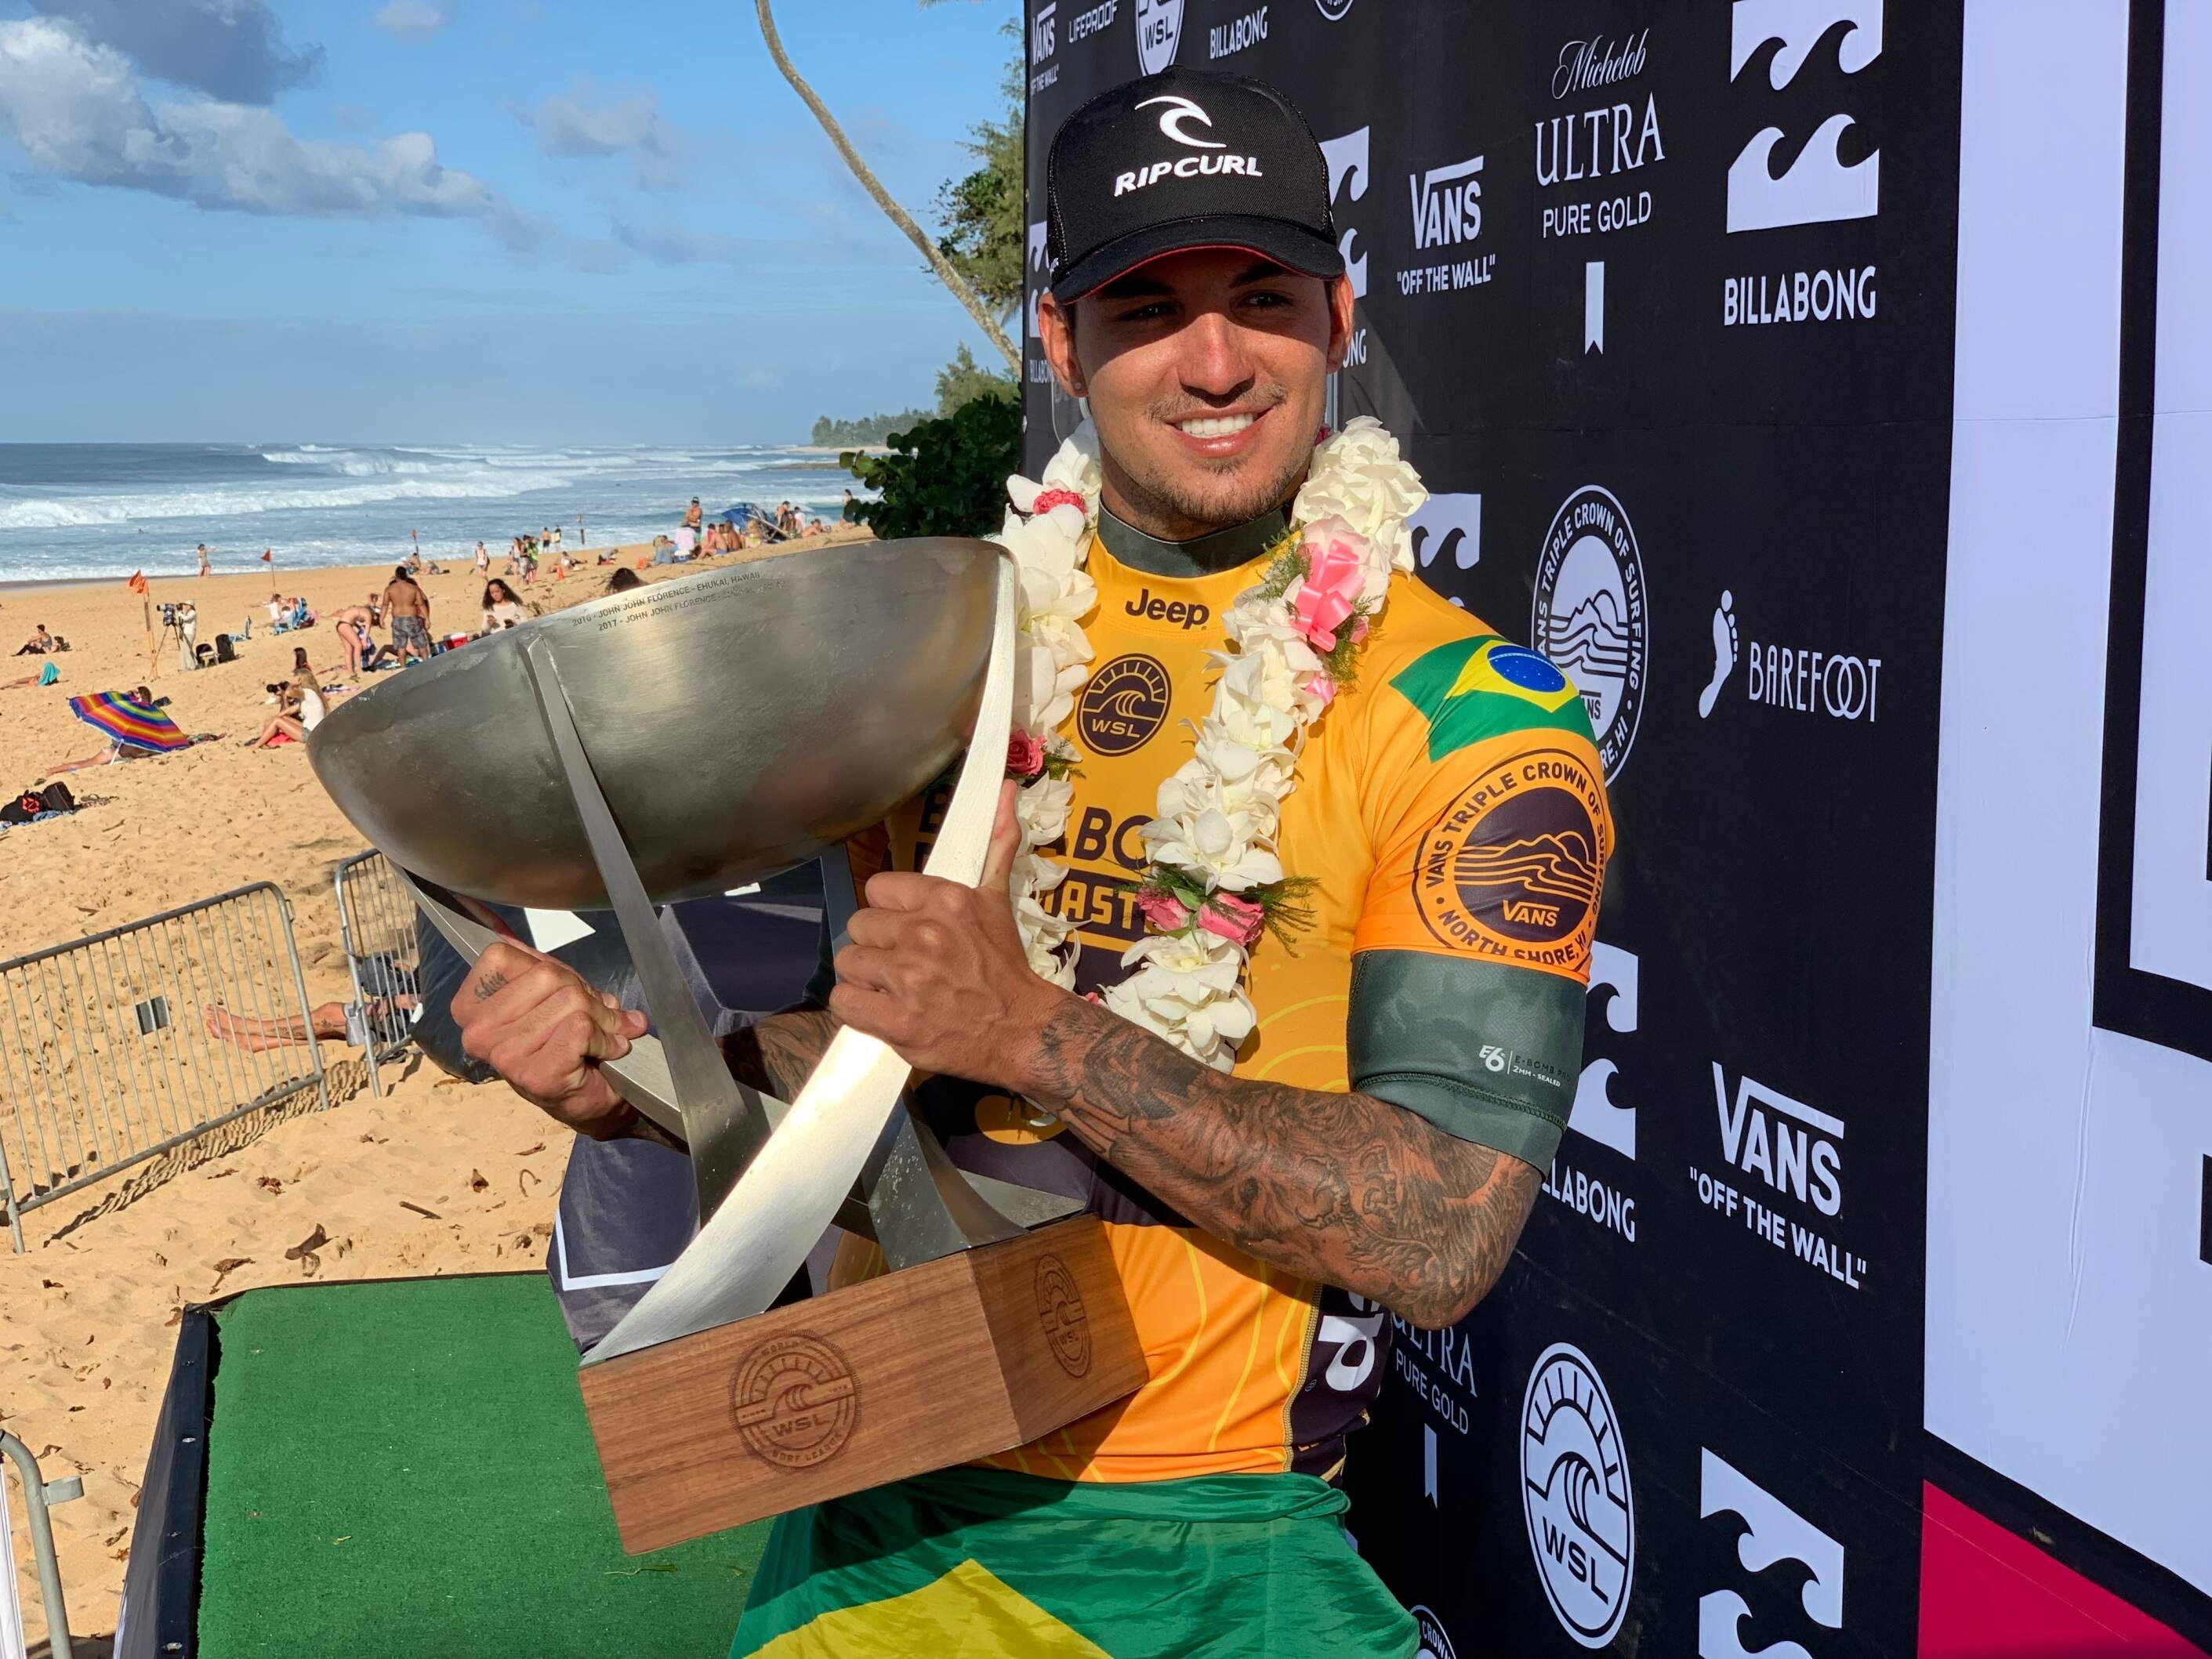 Com bicampeonato, surfista se torna único brasileiro a ter esse título